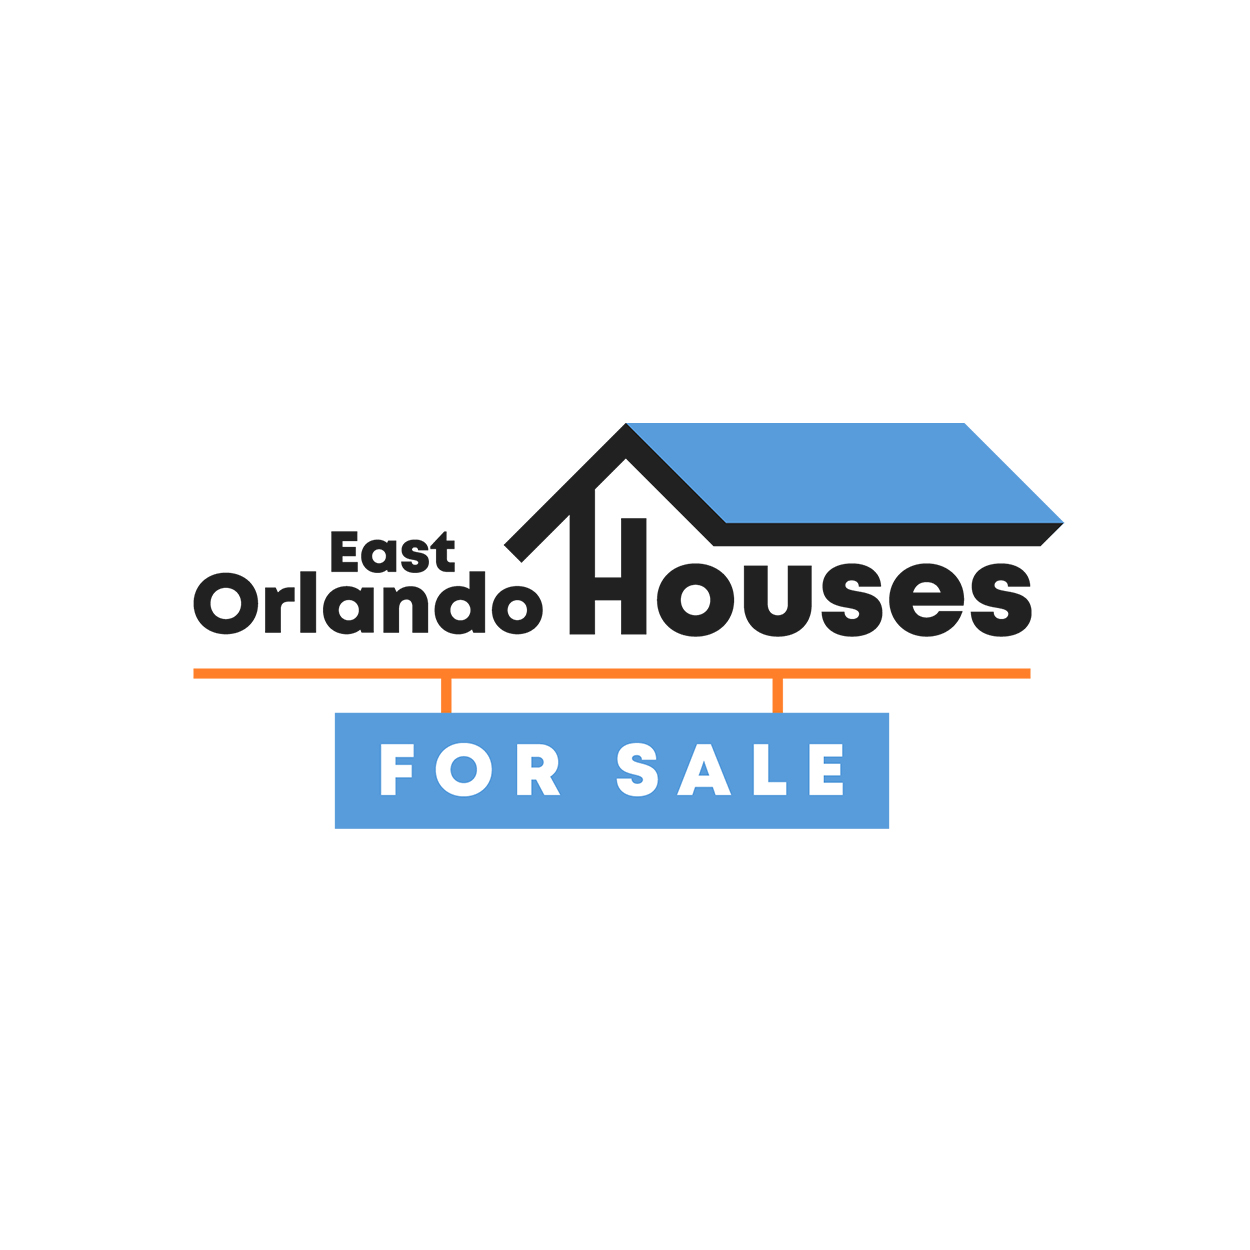 East Orlando Houses For Sale Logo Design